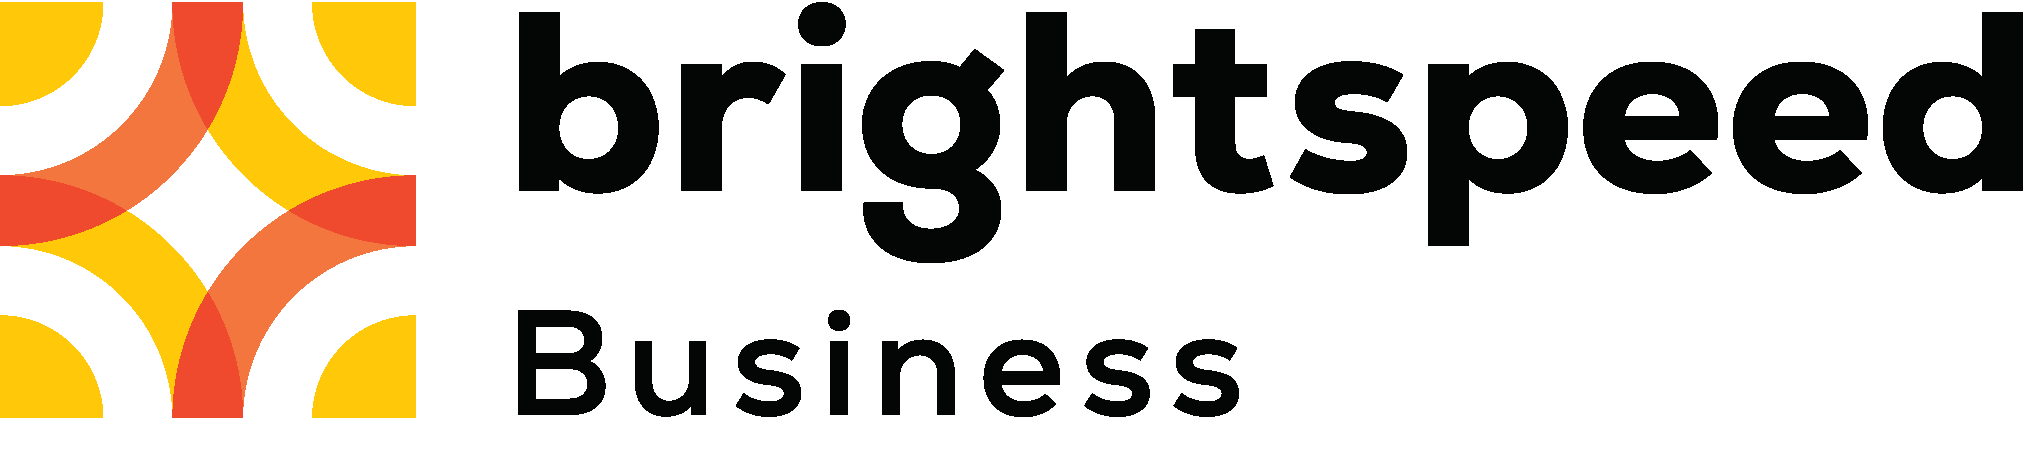 Brightspeed Business